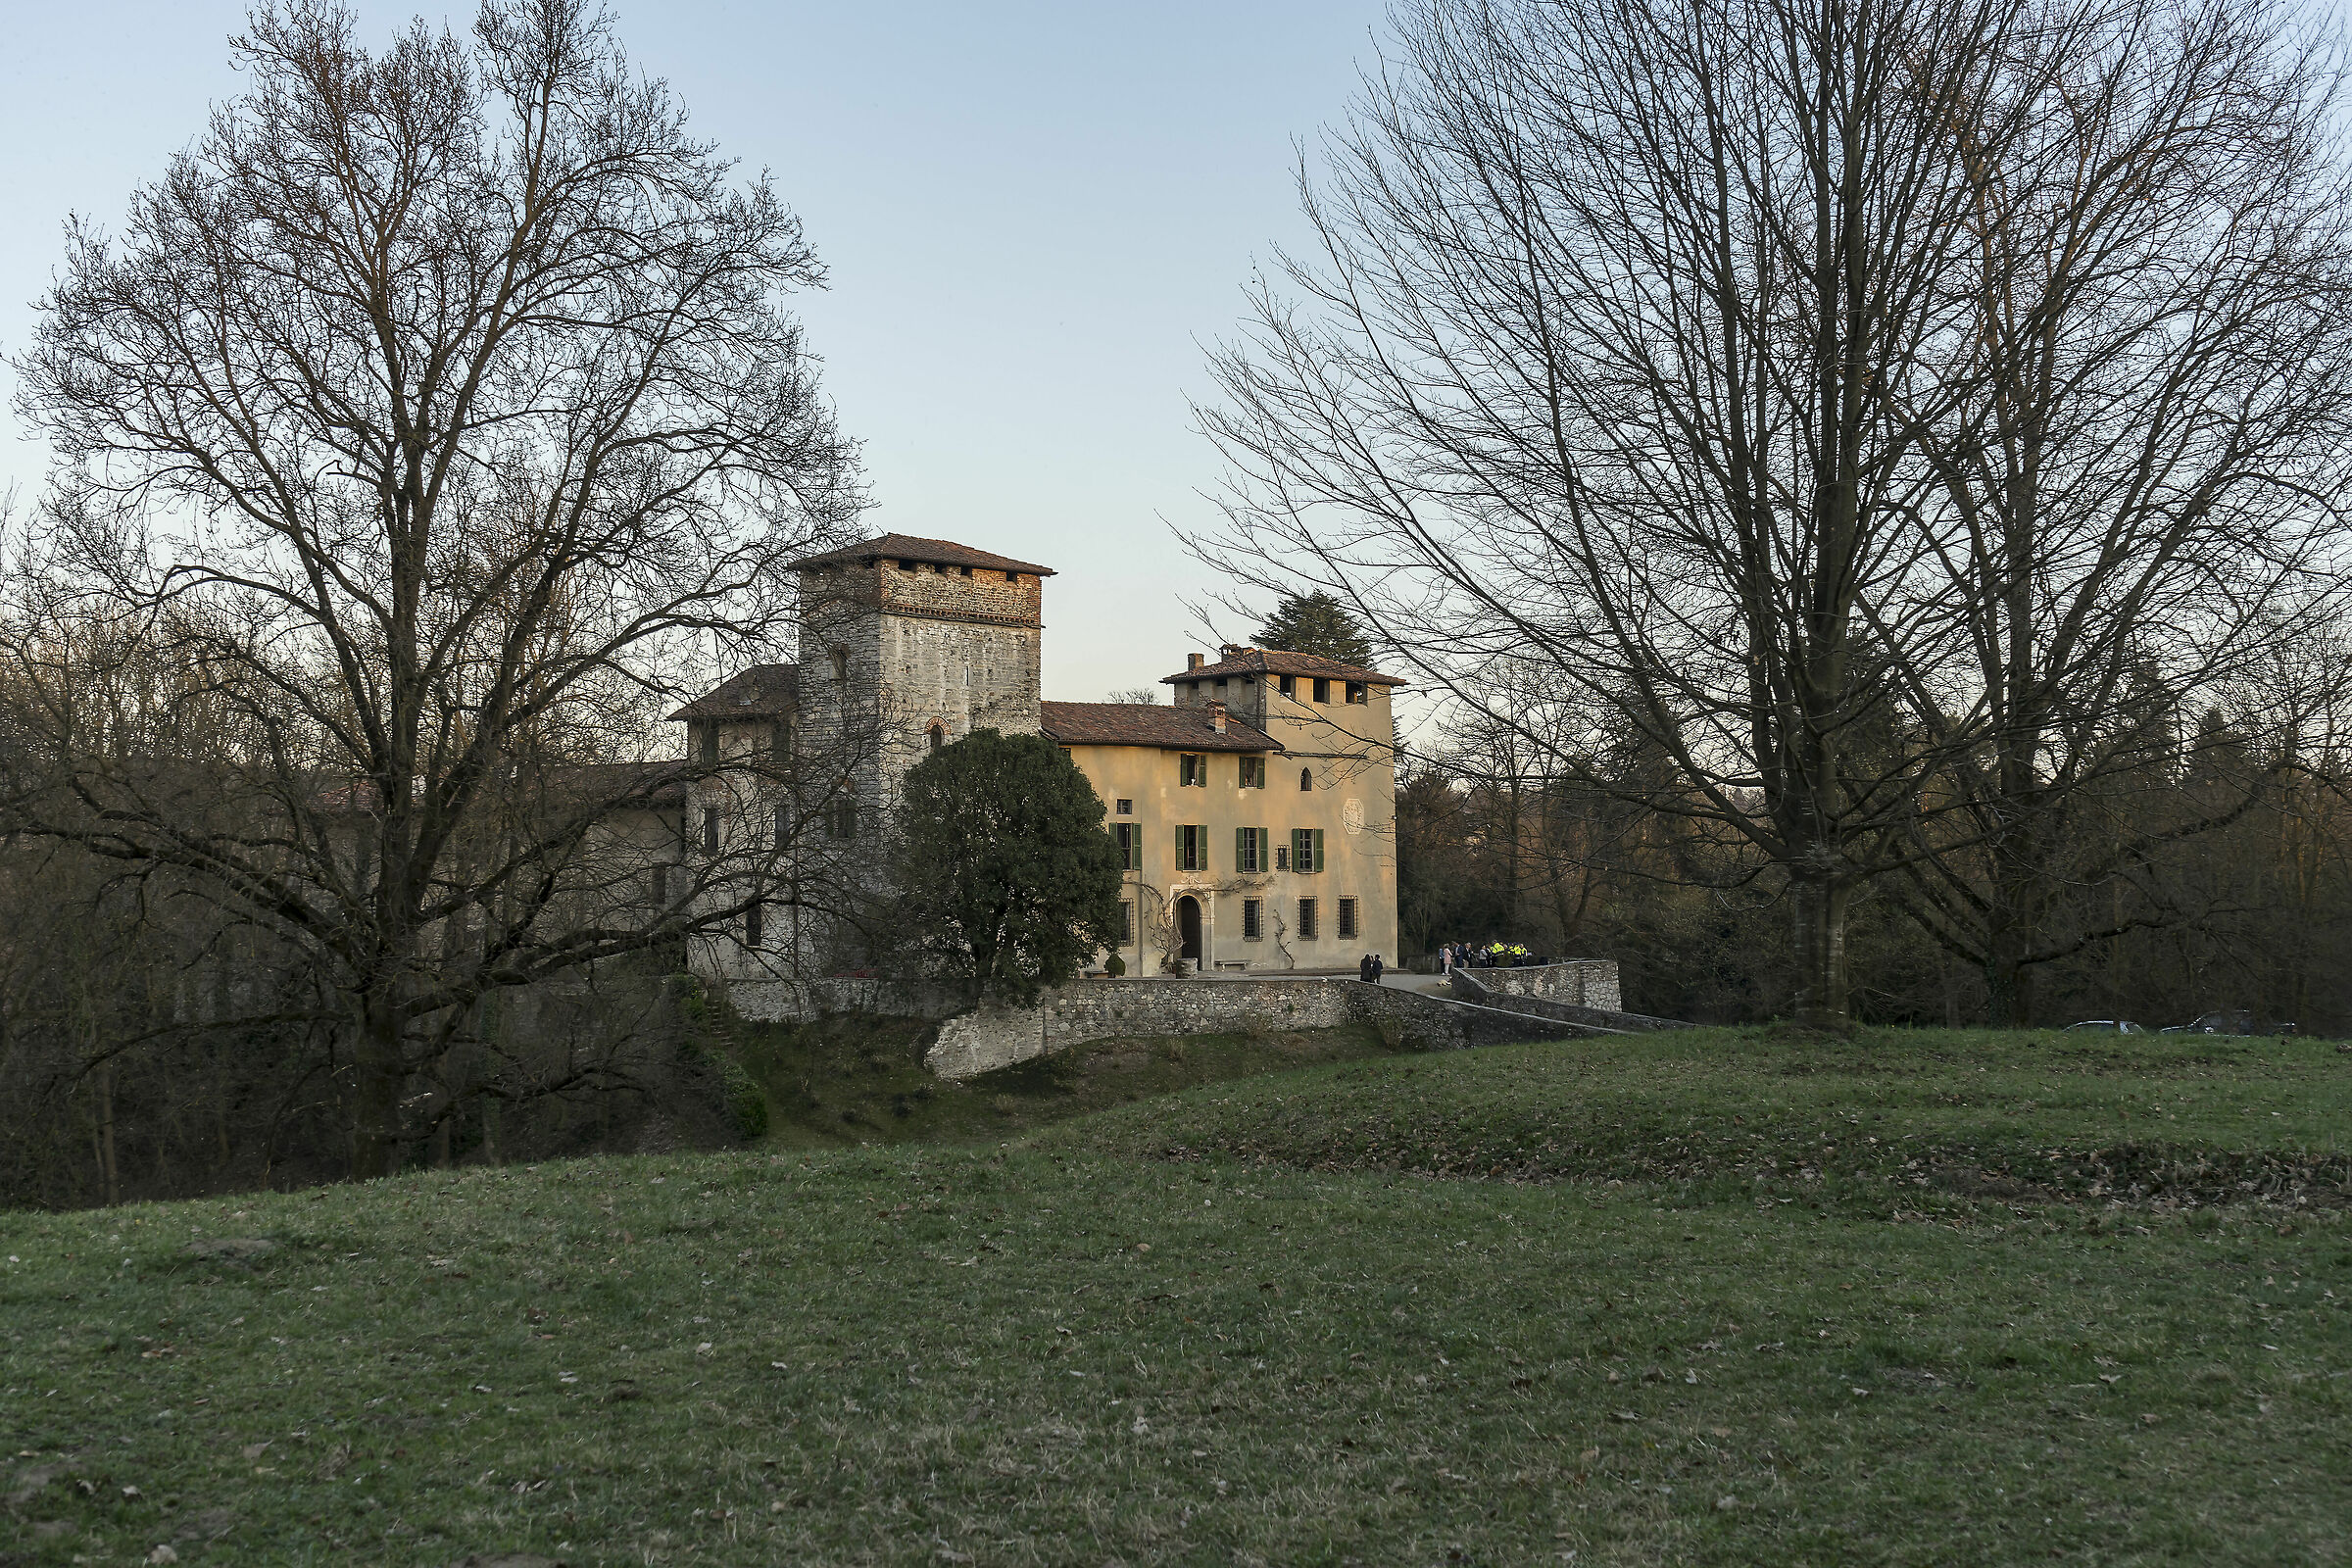 Castello Visconteo of Castelletto Sopra Ticino-5...